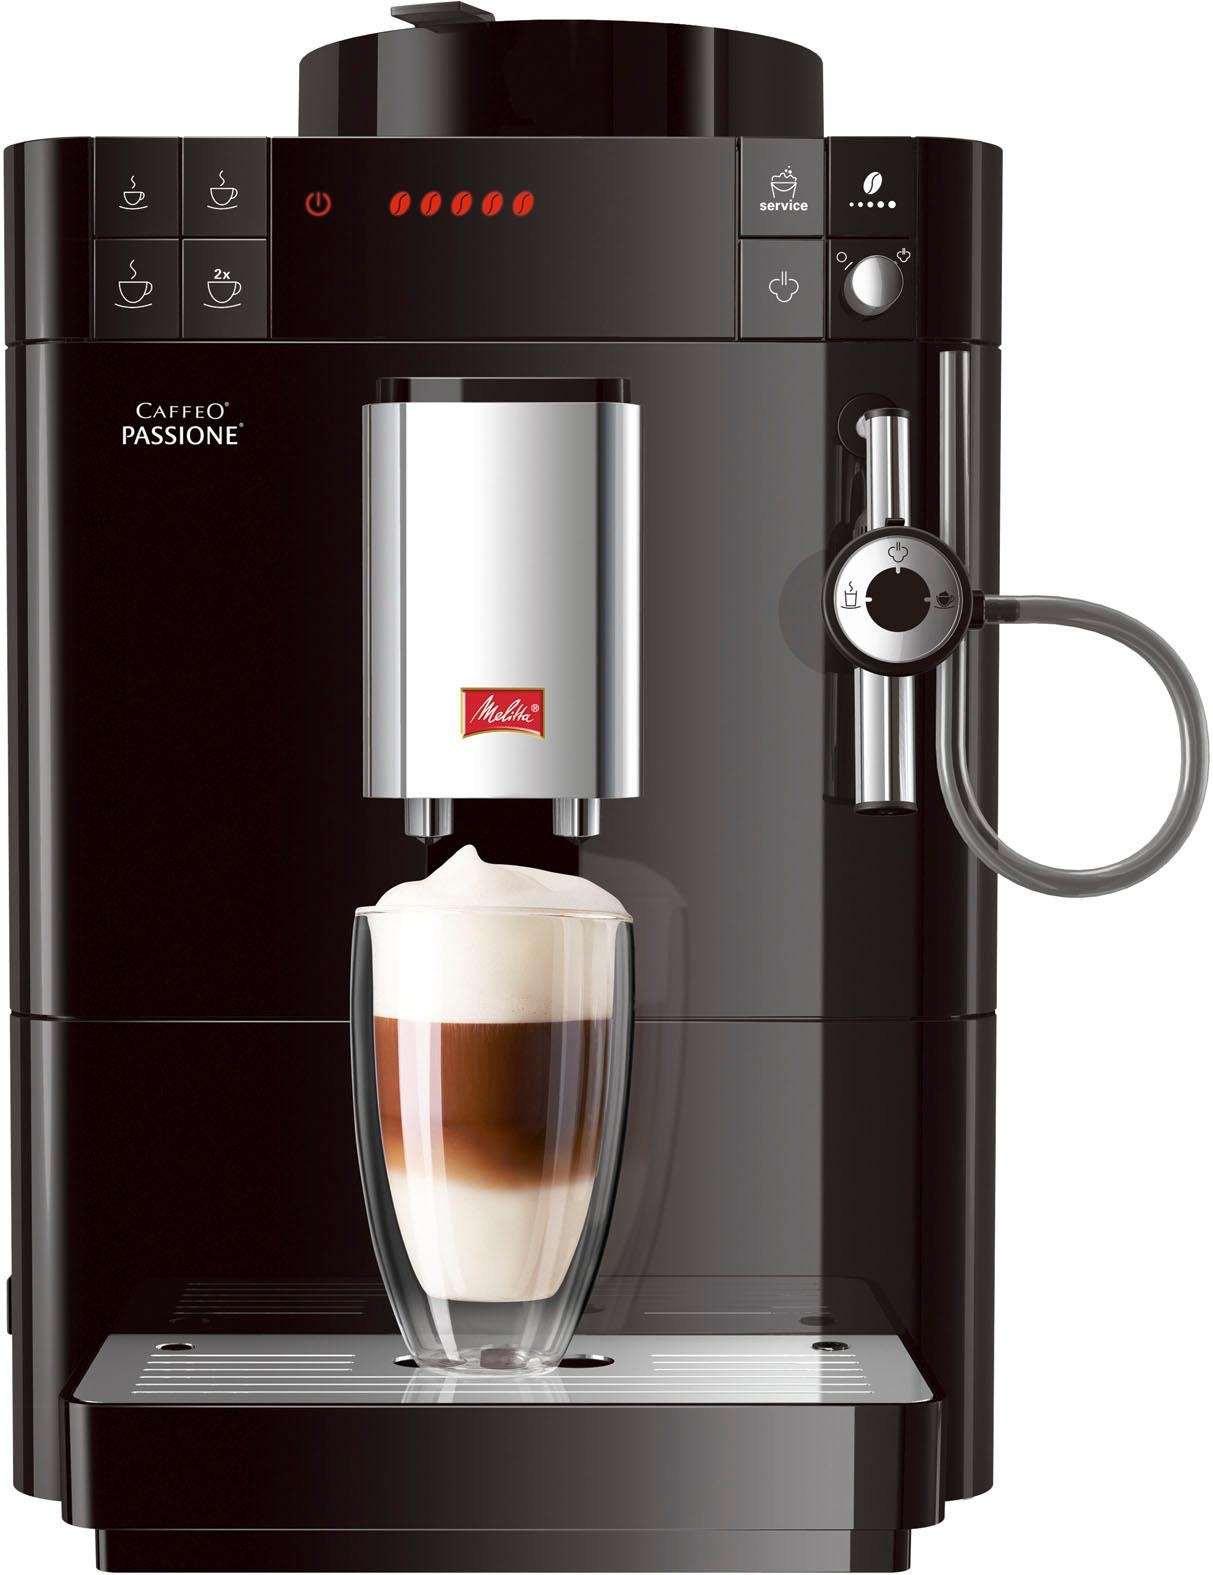 Entkalkung Kaffeevollautomat für Tassengenau gemahlen, OTTO Service-Taste Melitta bestellen bei & schwarz«, »Passione® jetzt frisch Reinigung F53/0-102